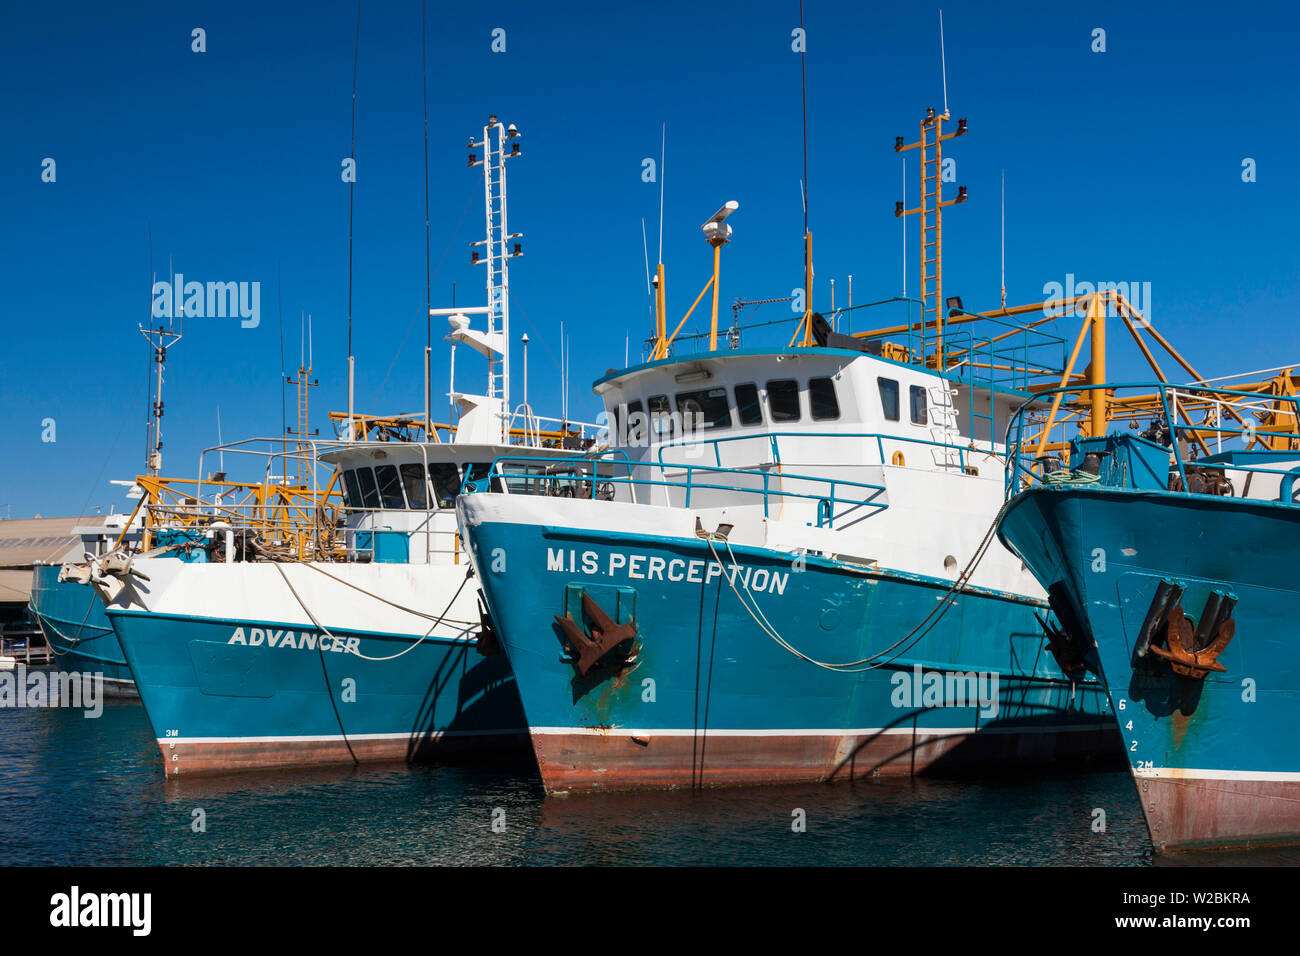 L'Australie, Australie occidentale, Freemantle, bateau de pêche, des bateaux de pêche du port Banque D'Images